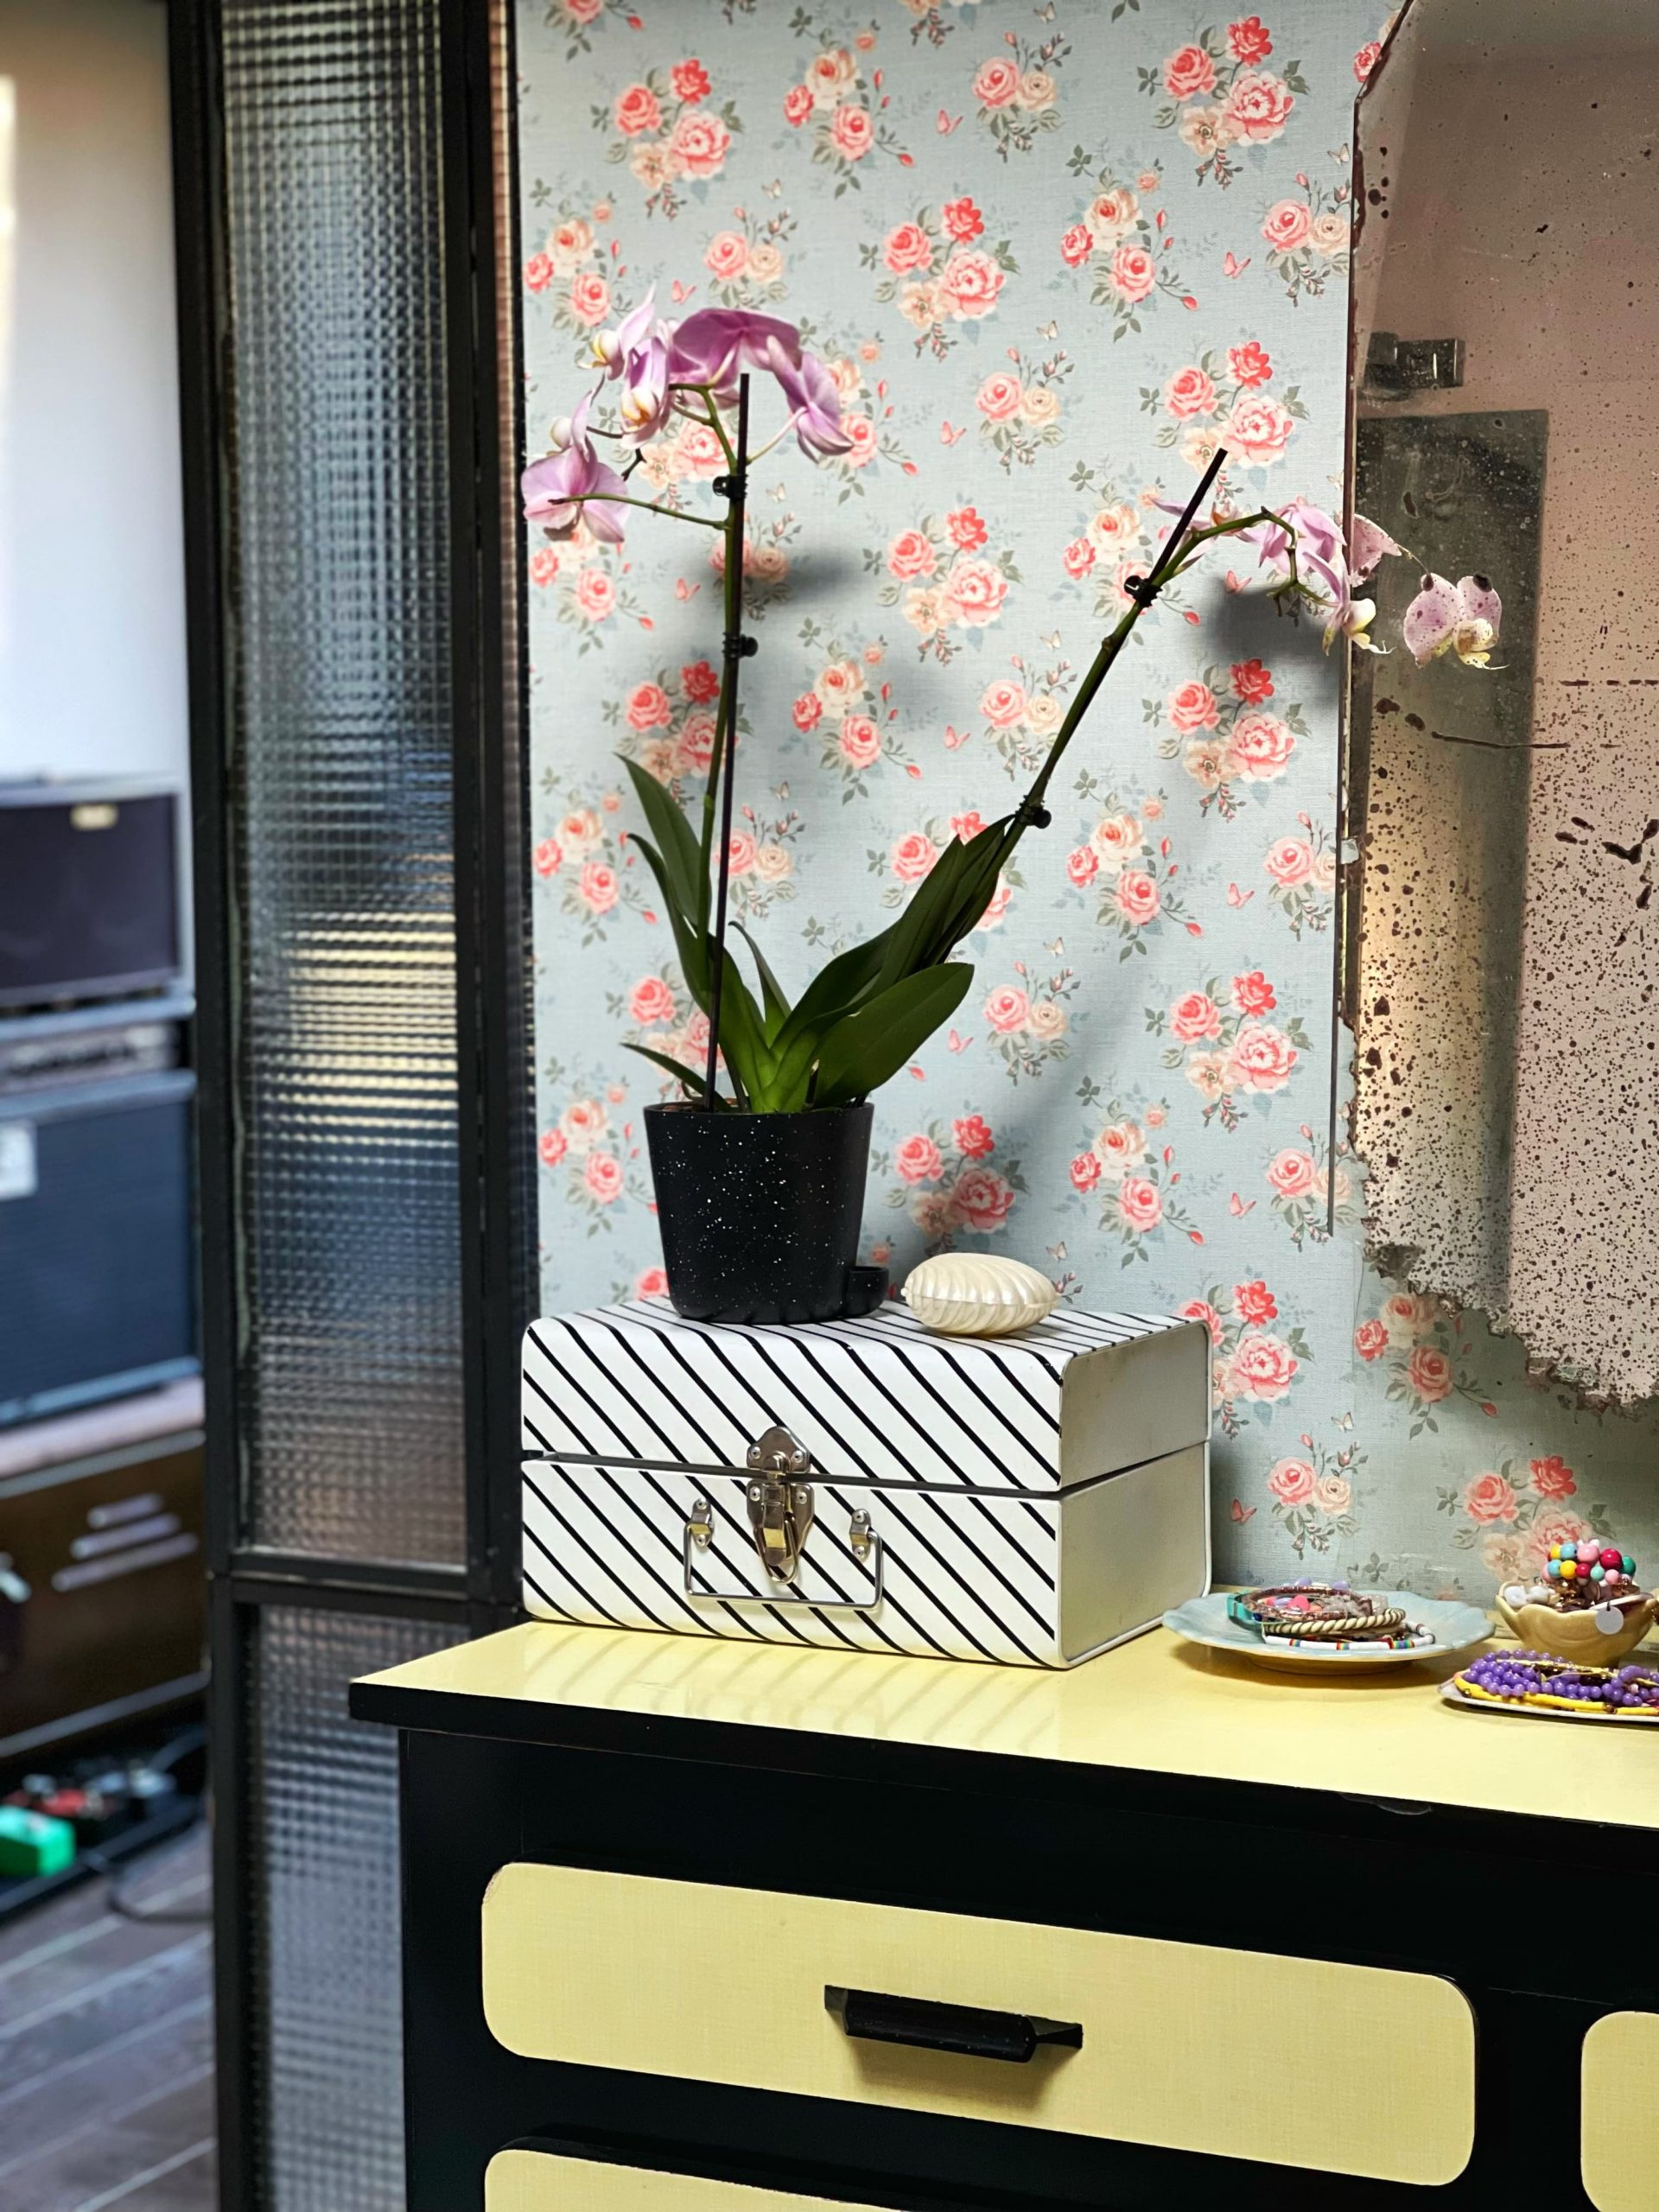 détail orchidées sur boite rayée papier peint fleurs